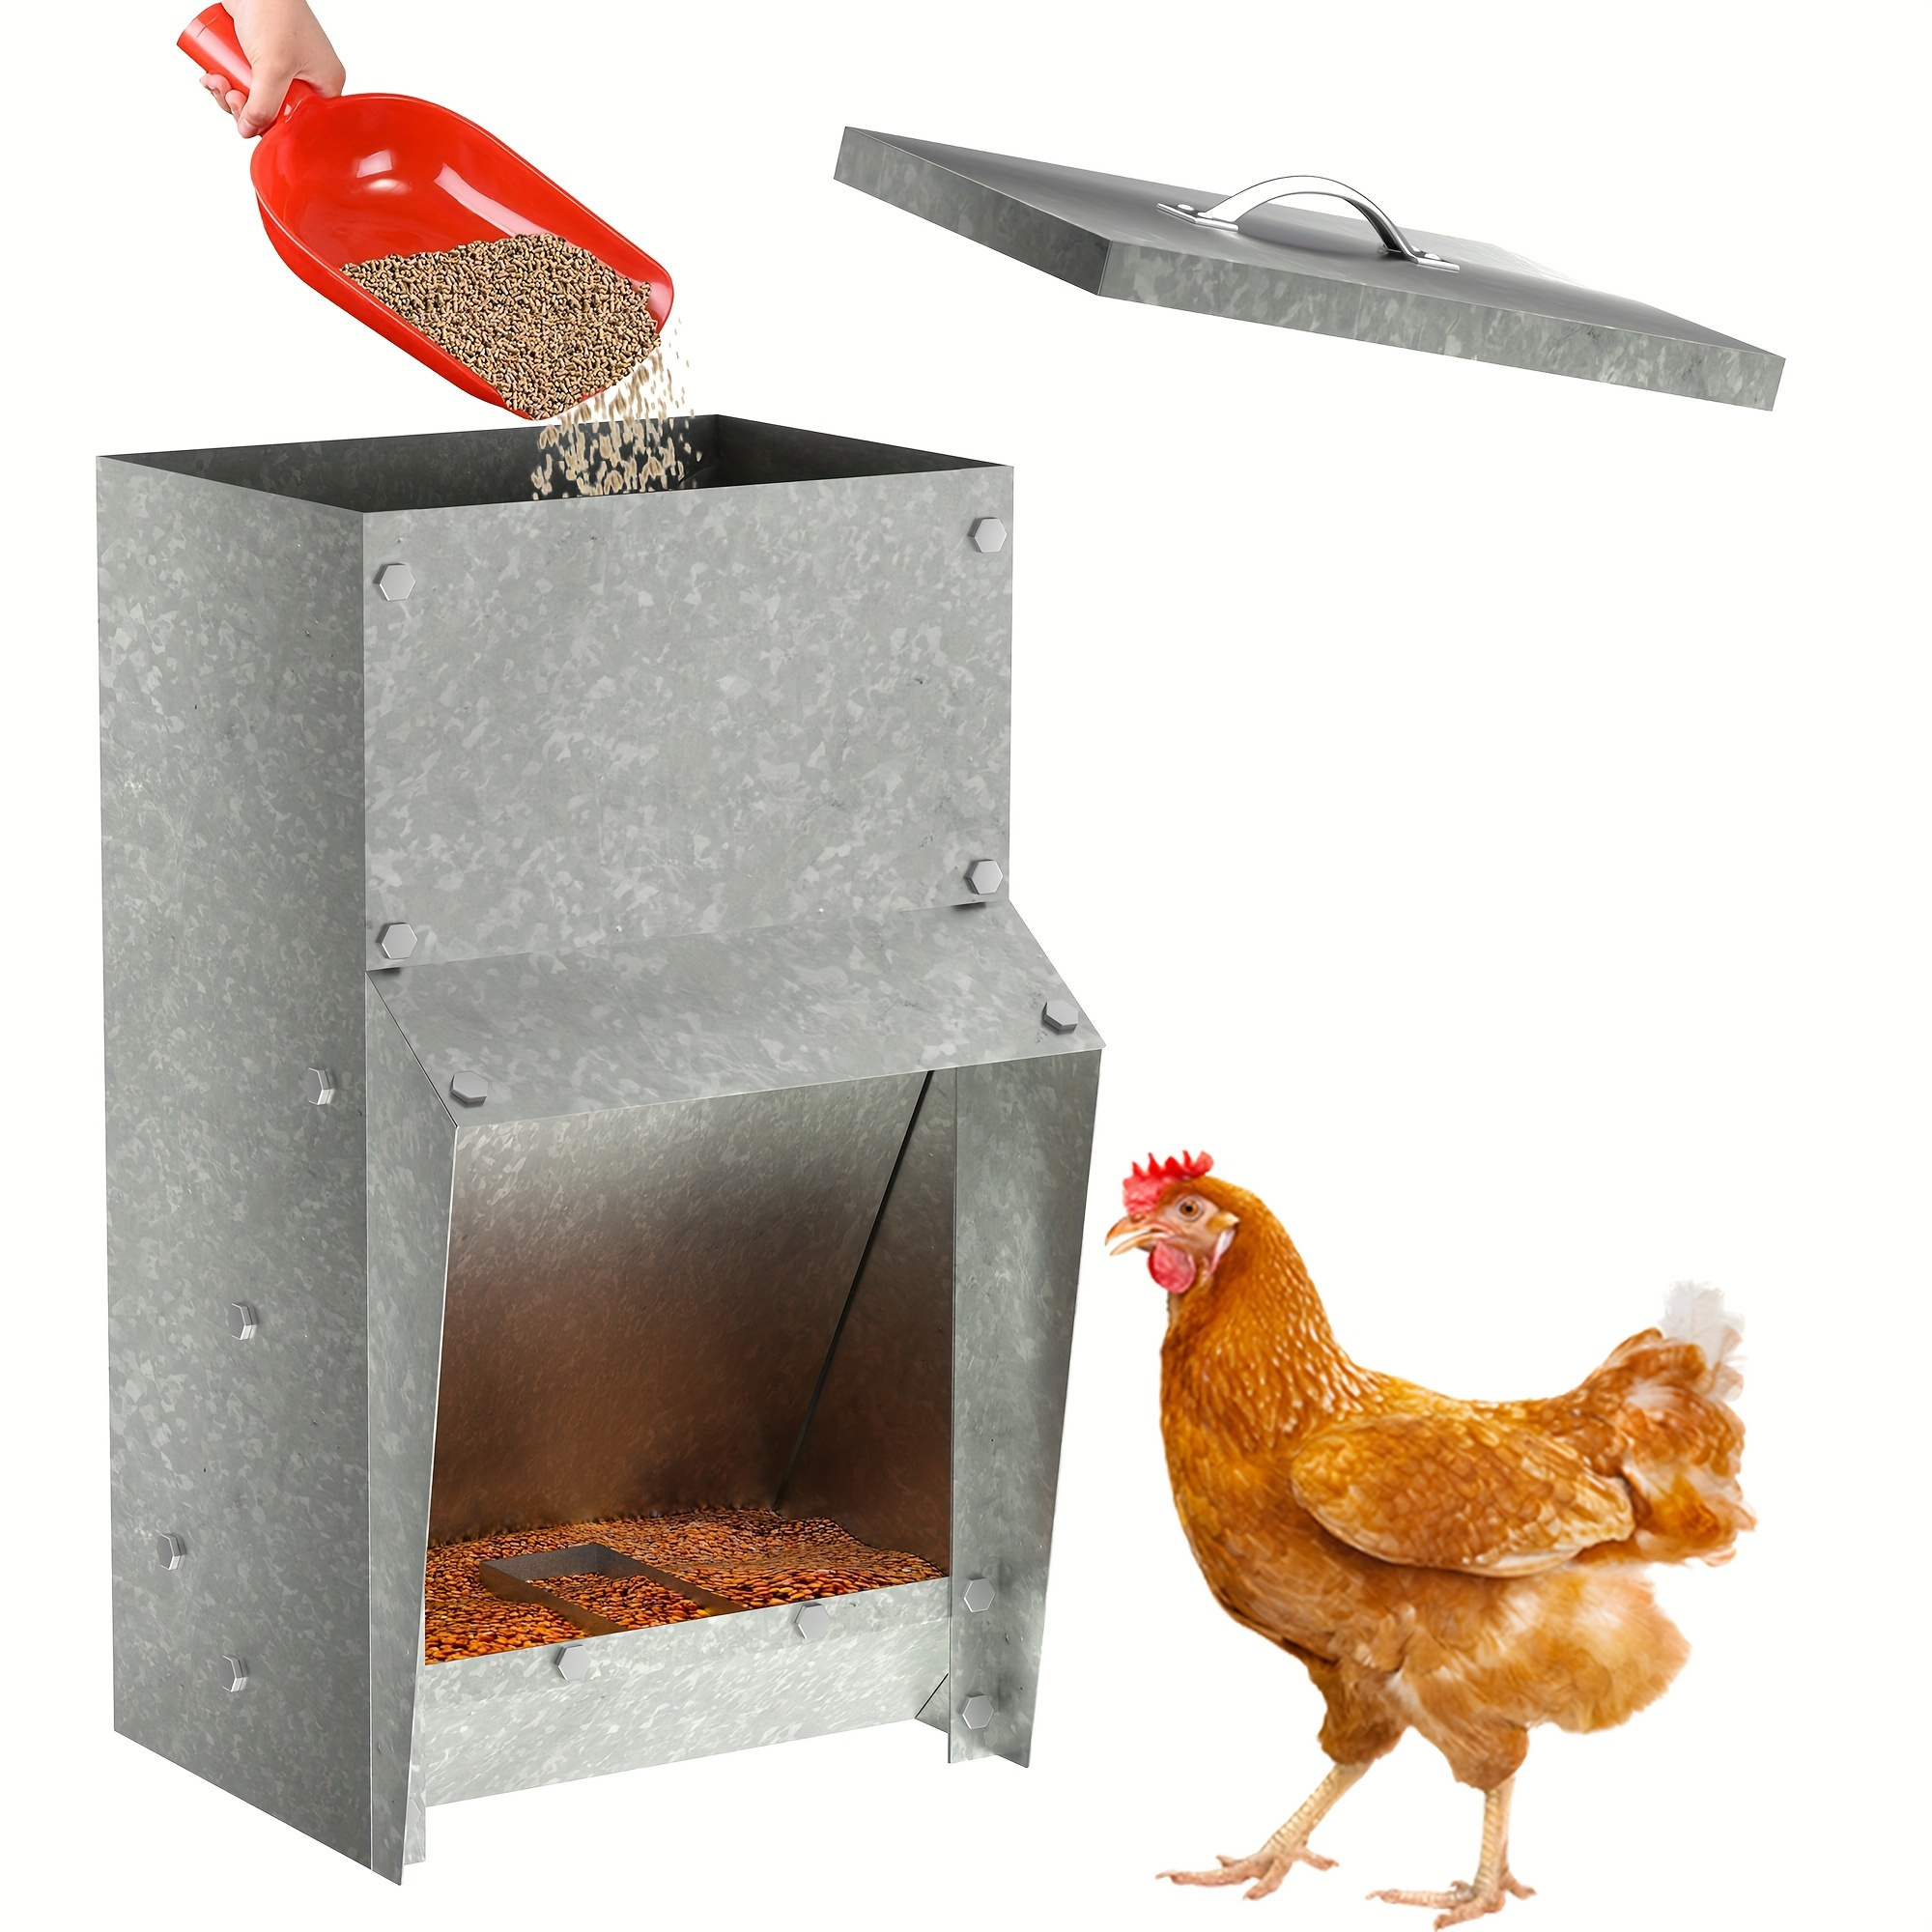 

12-30lbs Galvanized Chicken Feeder - Rat Proof Poultry Feeder With Lid Weatherproof Outdoor Coop Food Dispenser